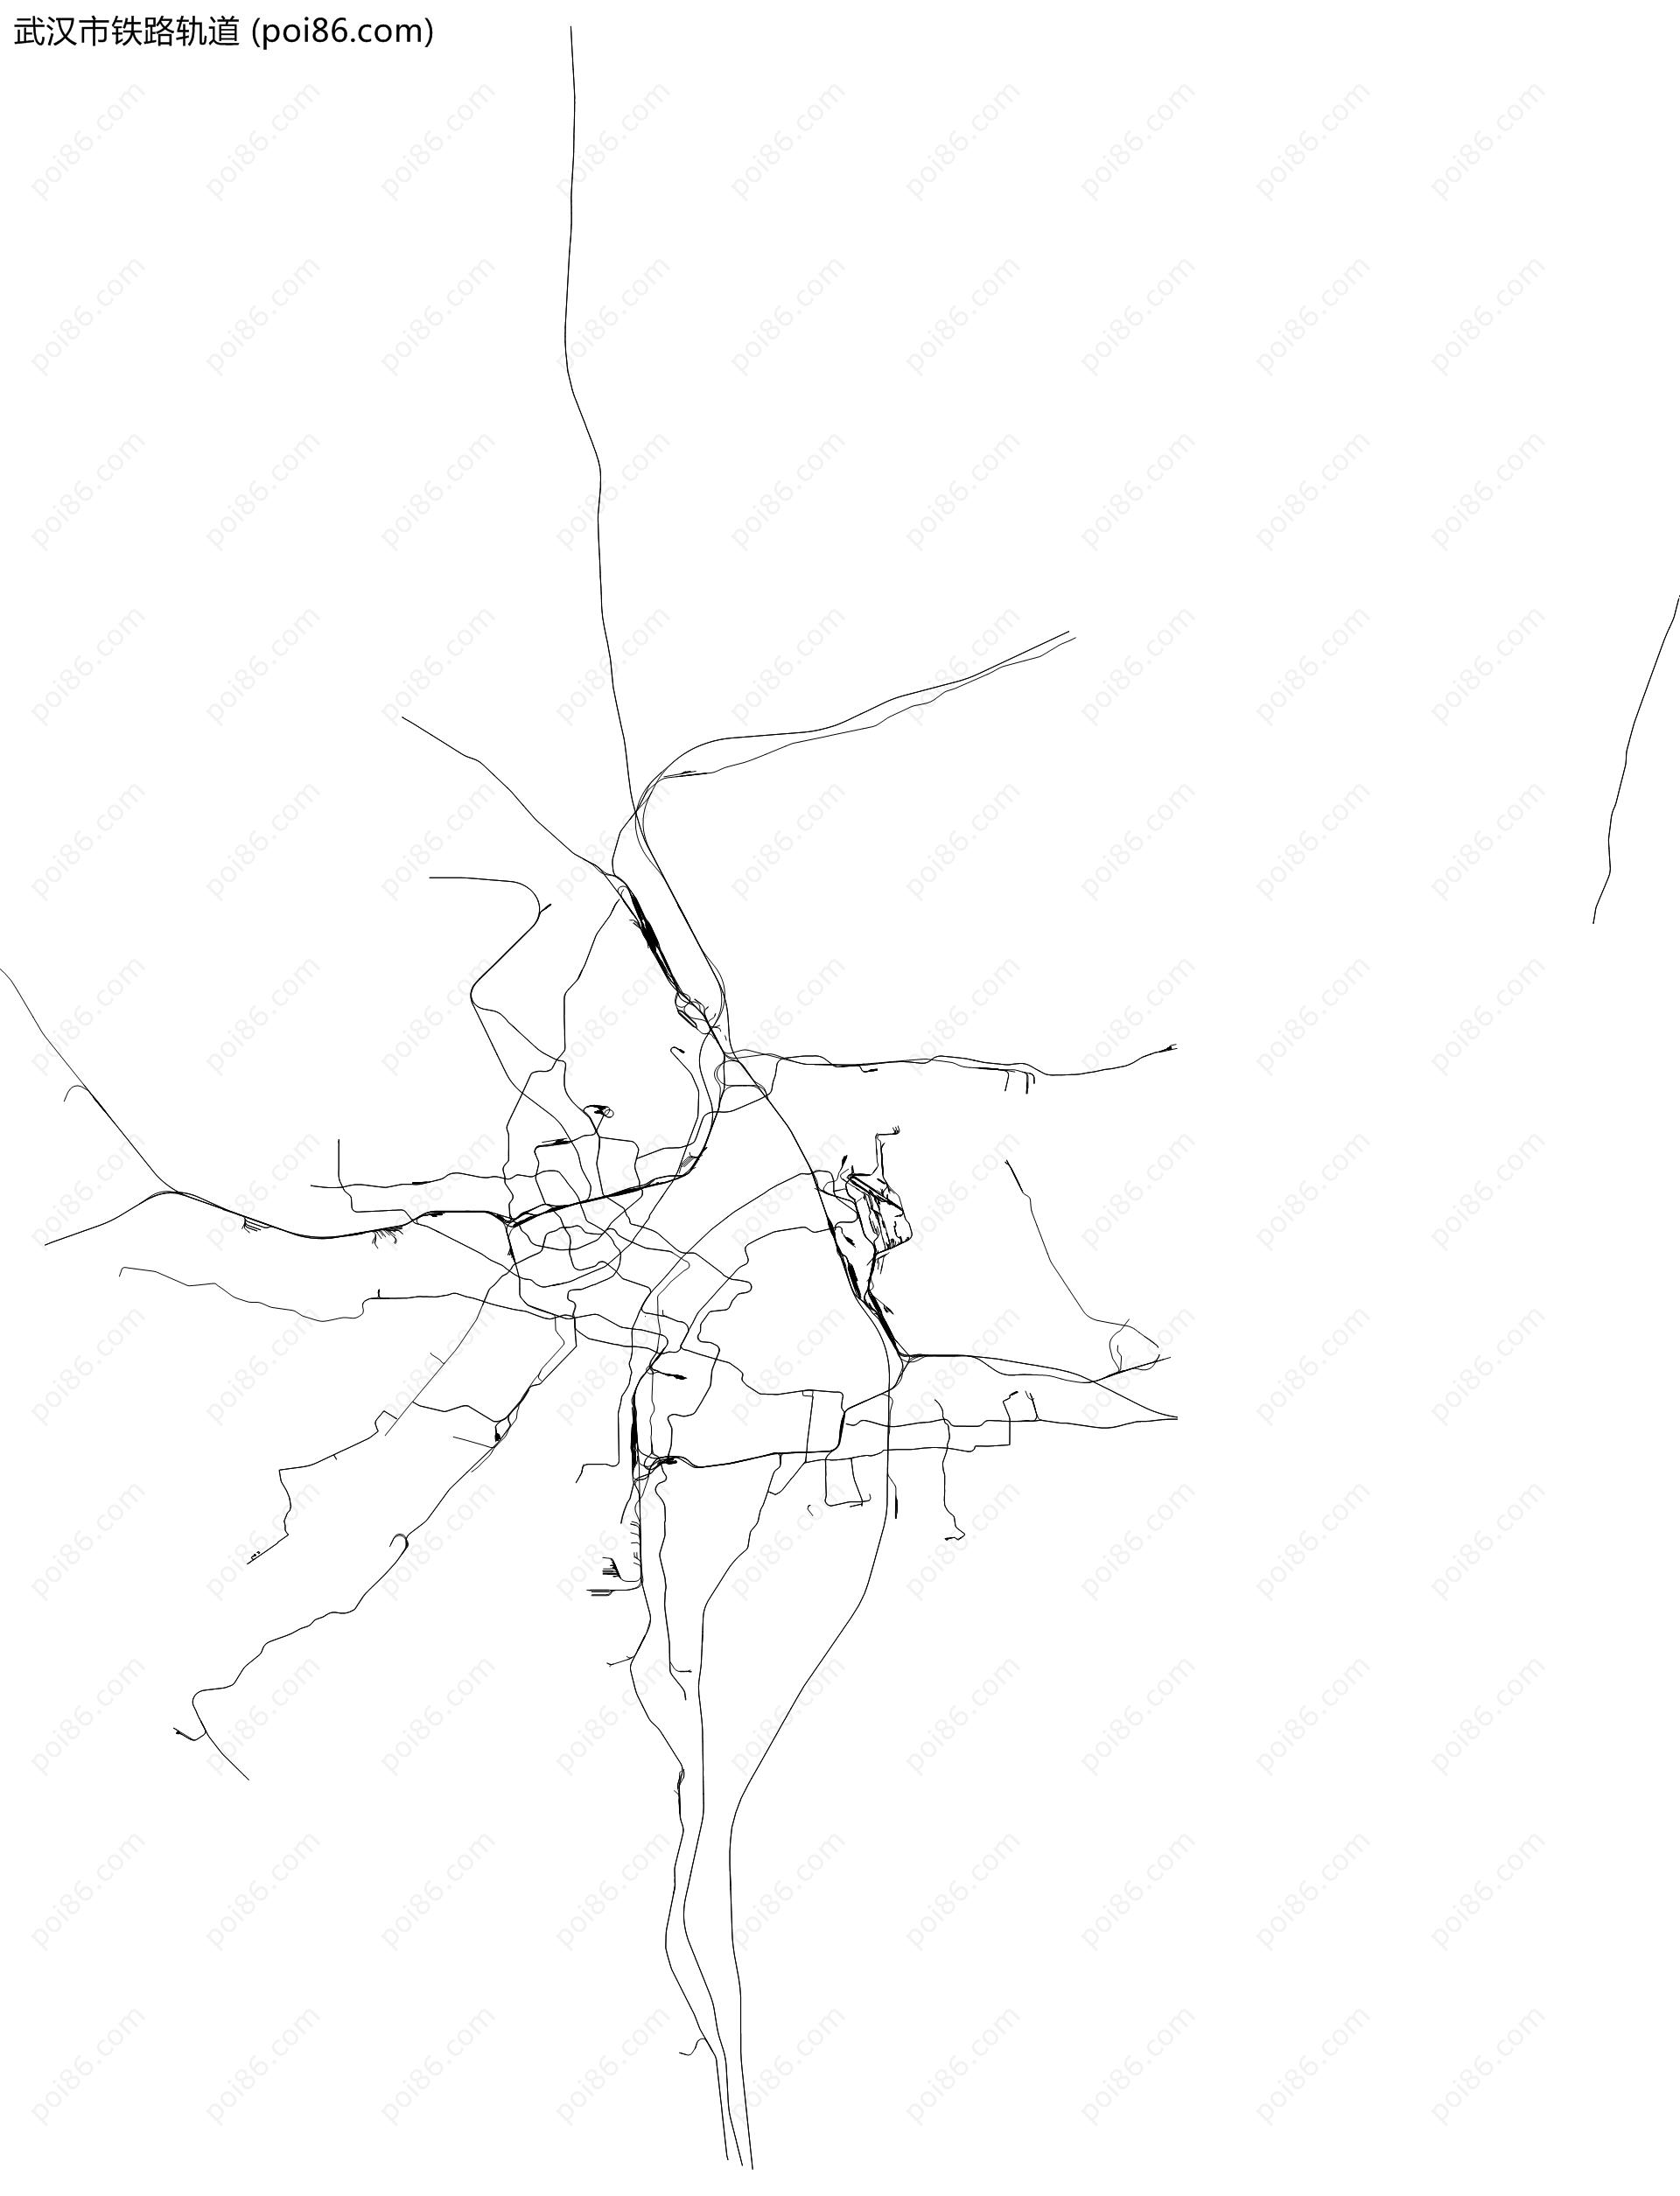 武汉市铁路轨道地图